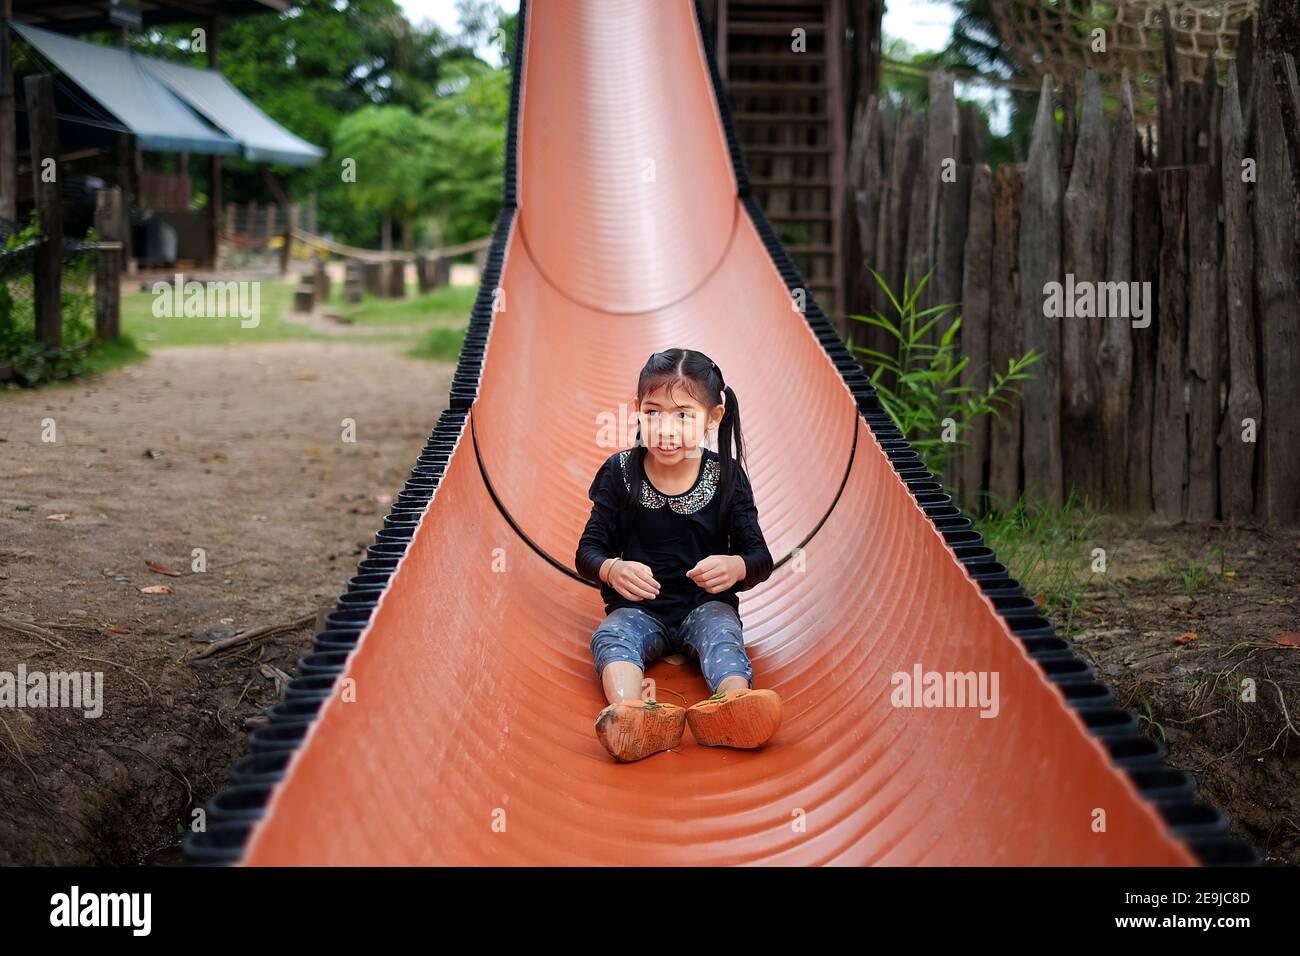 Une jeune fille asiatique mignonne glisser vers le bas d'une longue diapositive orange, s'amusant et souriant. Banque D'Images